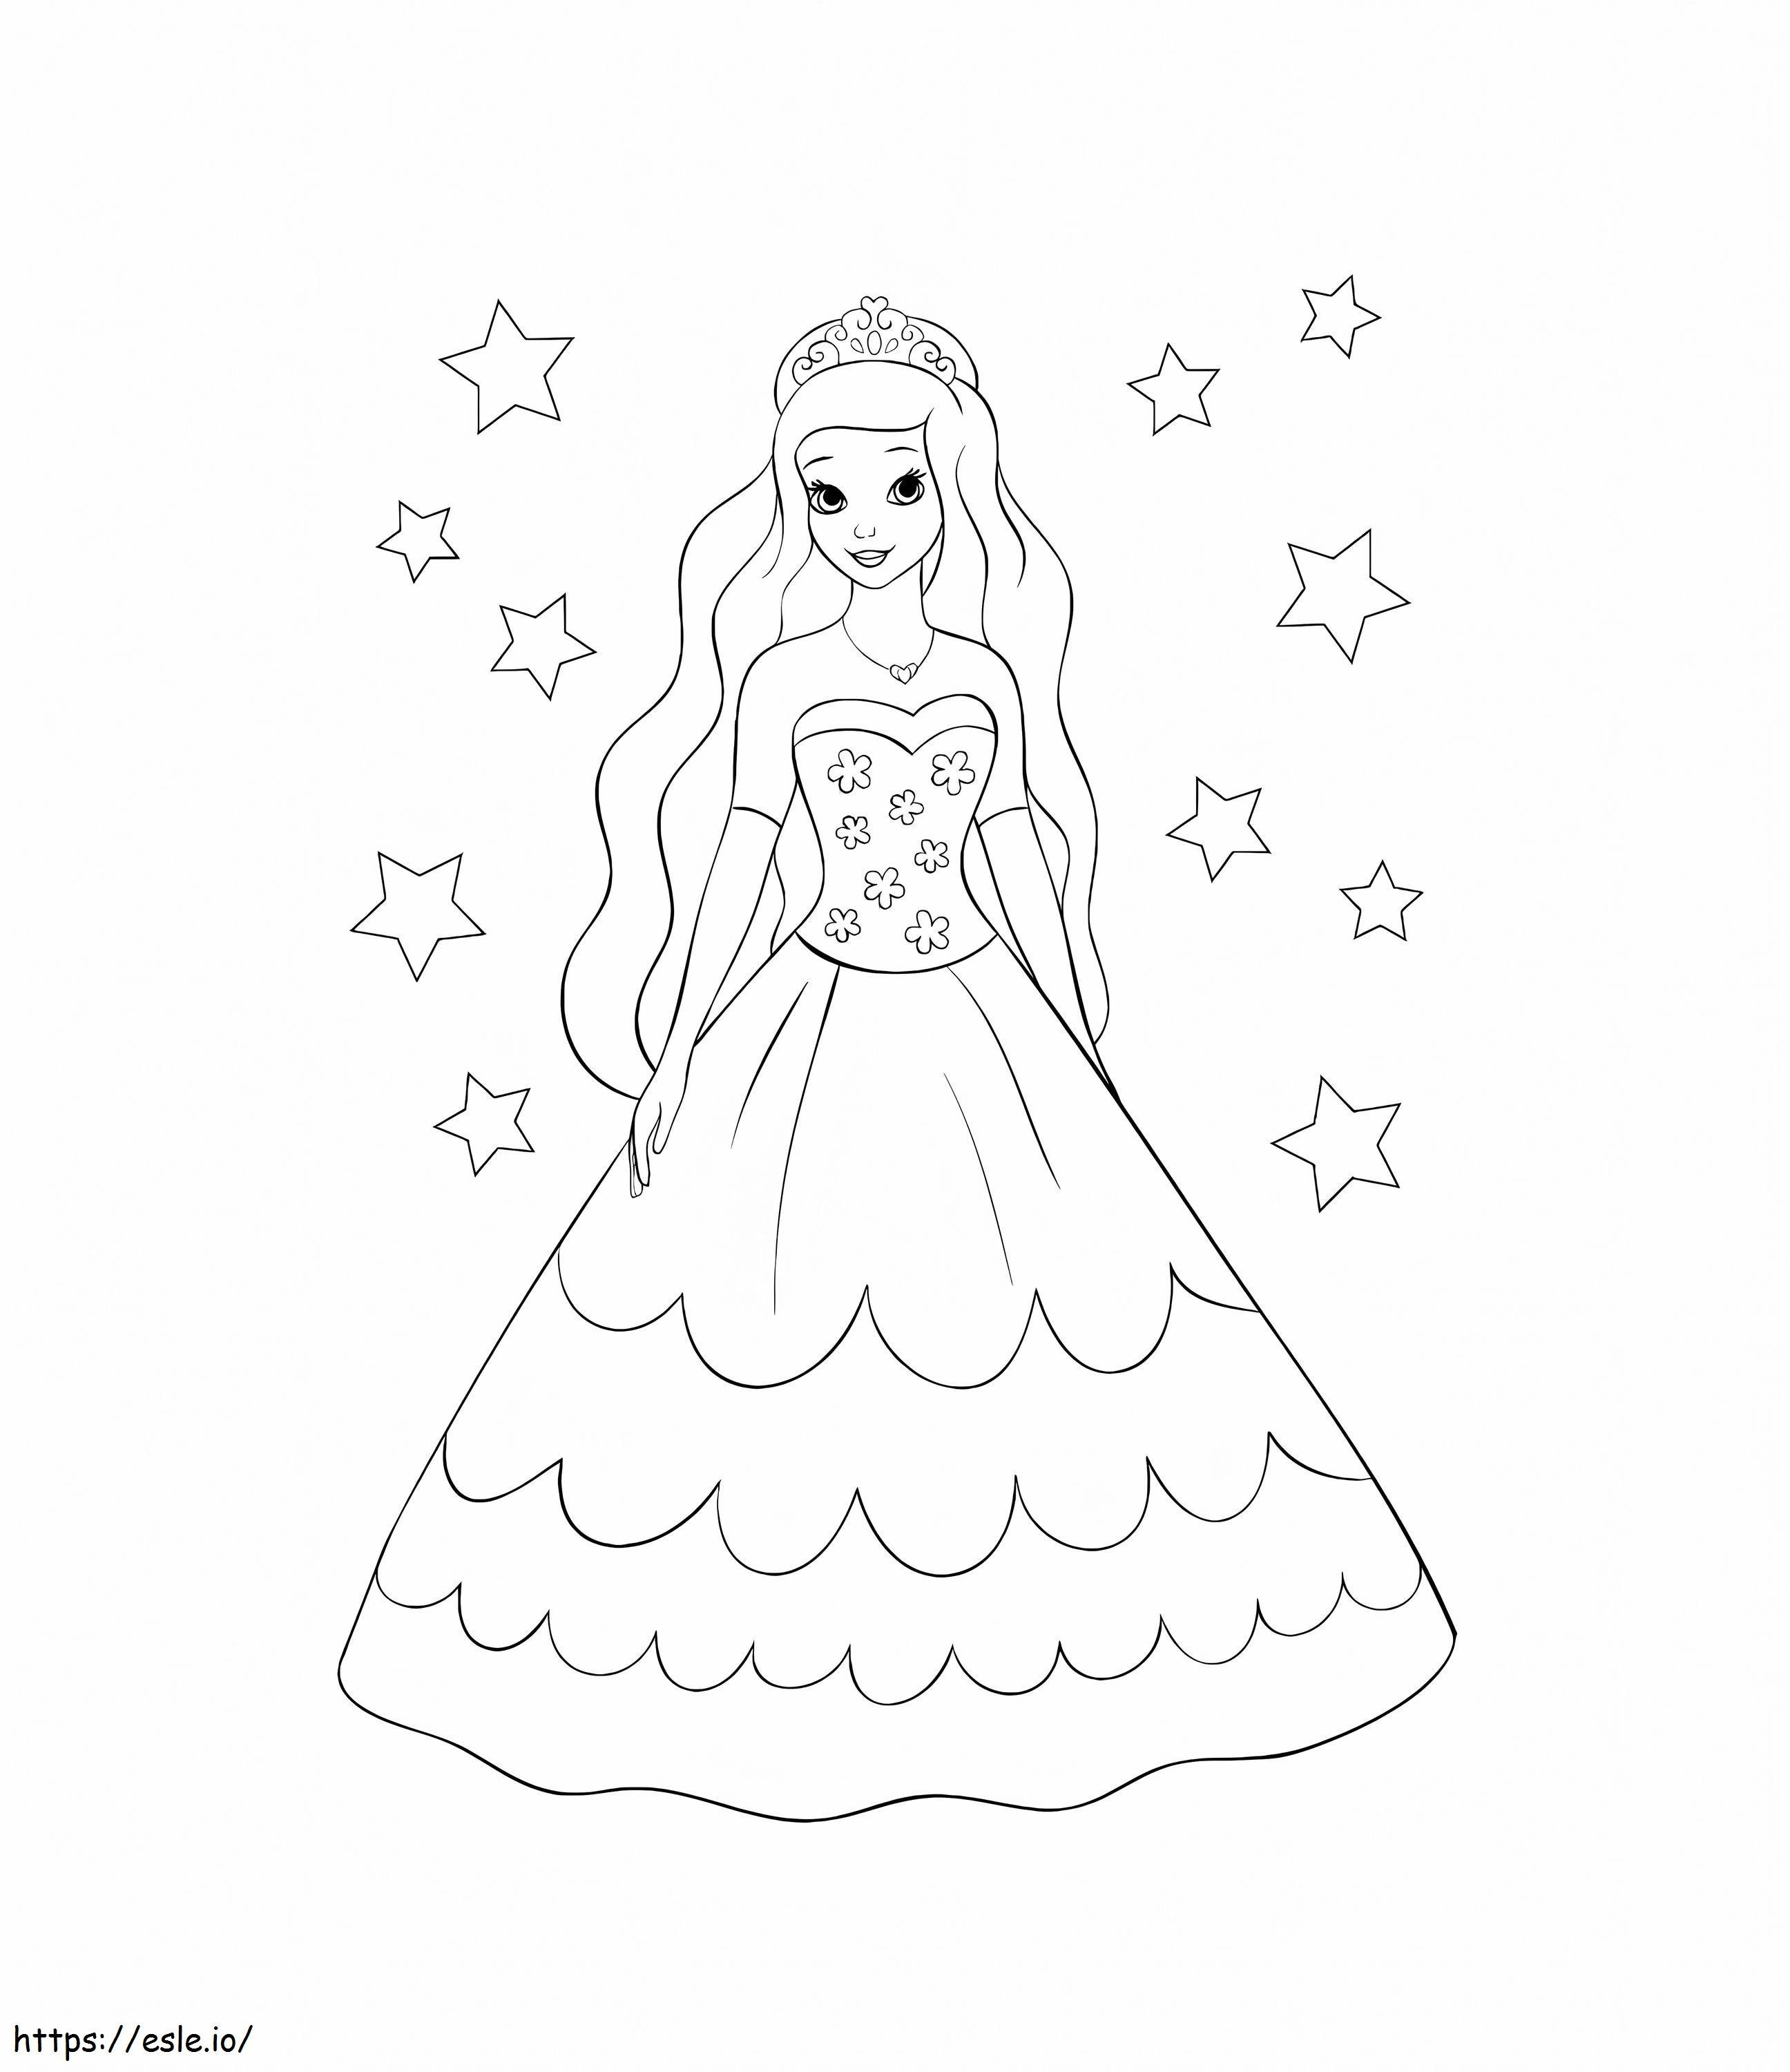 Coloriage Princesse des étoiles à imprimer dessin